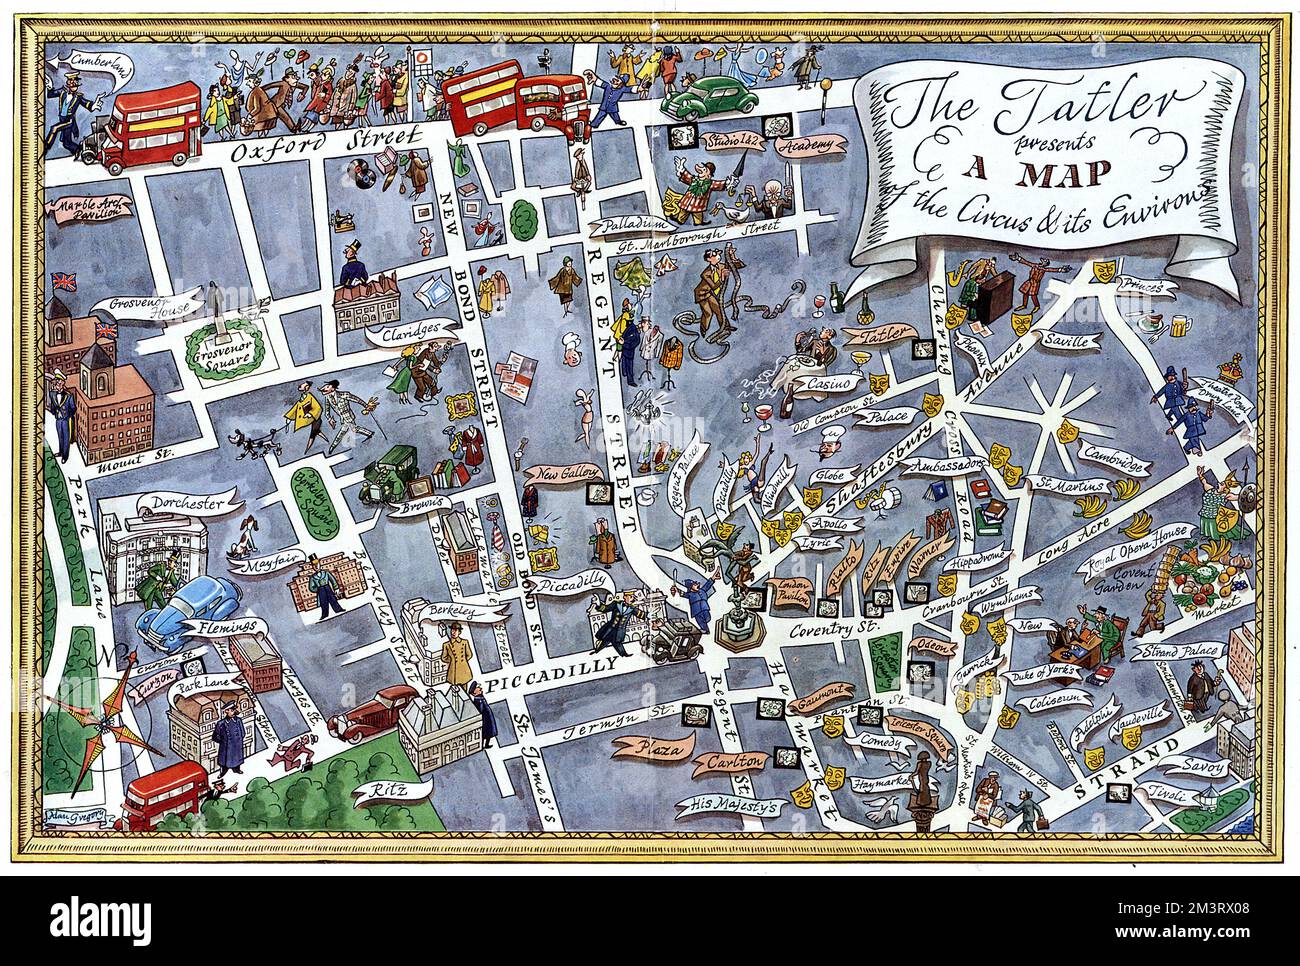 Eine fabelhafte Landkarte von Londons West End, die sich auf die Gegend vom Piccadilly Circus konzentriert, zeigt Hauptstraßen, Hotels, Nachtlokale, Theater und Wahrzeichen. Datum: 1950 Stockfoto